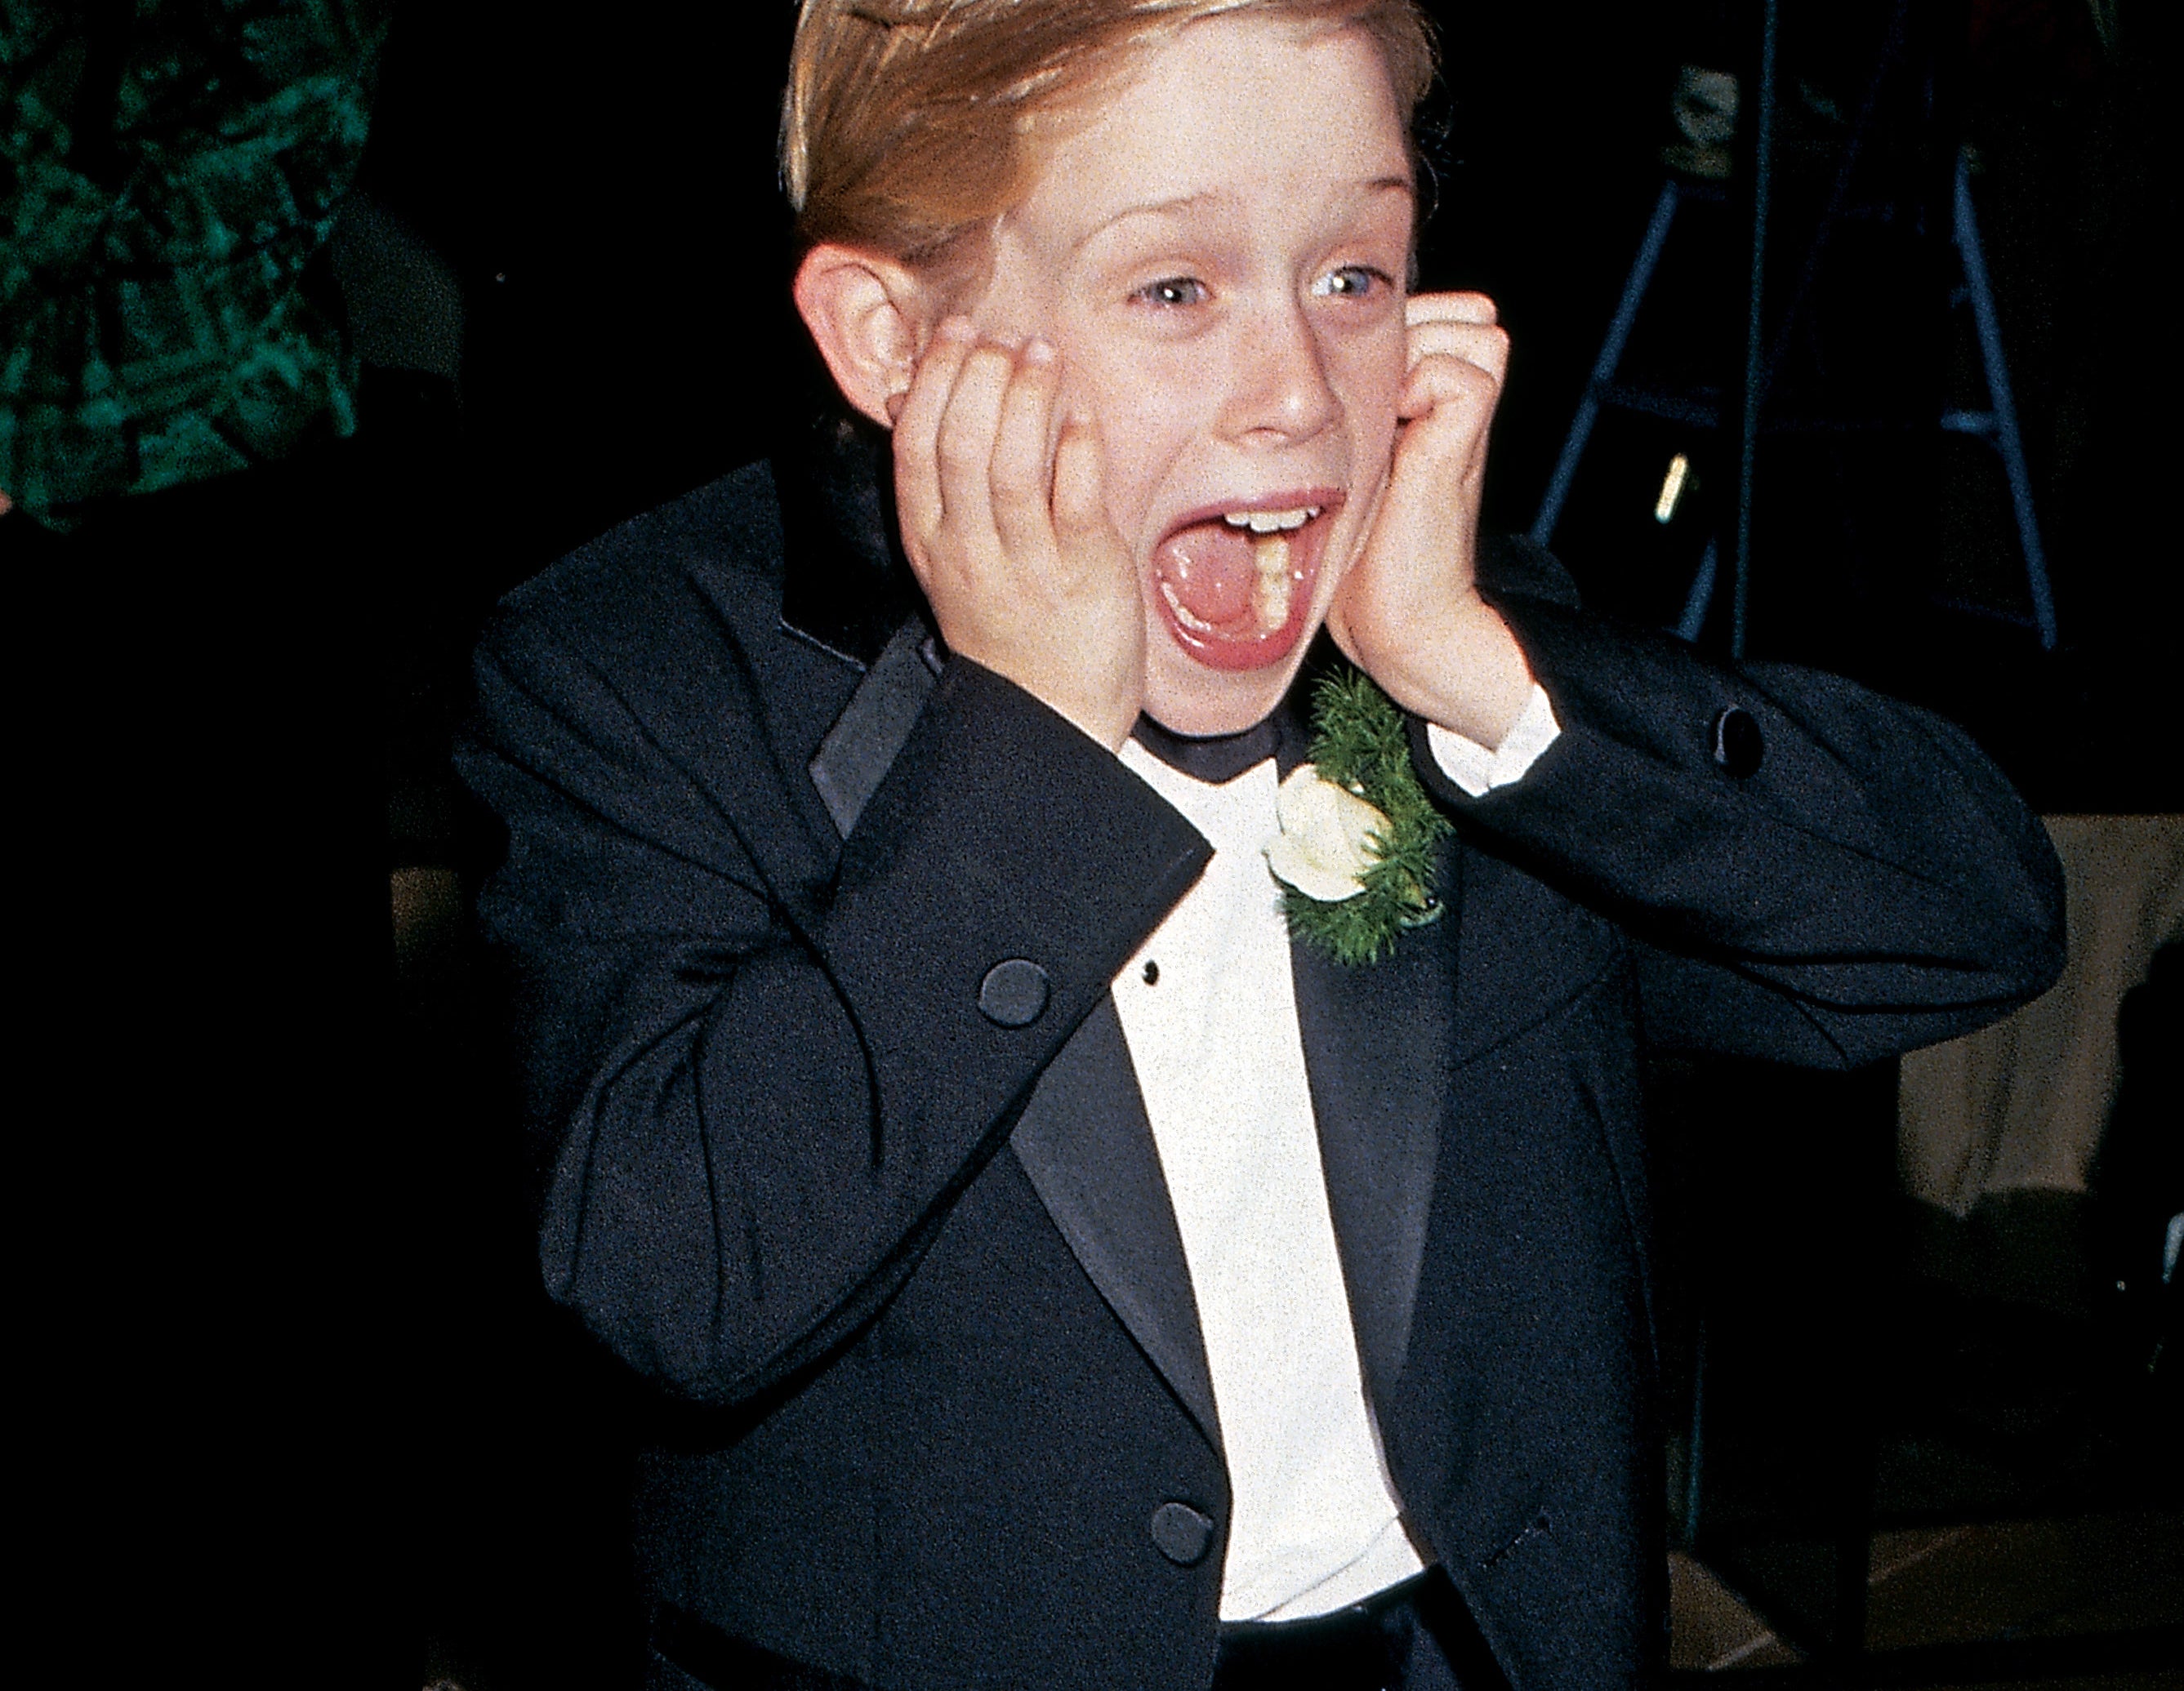 Macaulay Culkin at the 1991 Golden Globe Awards